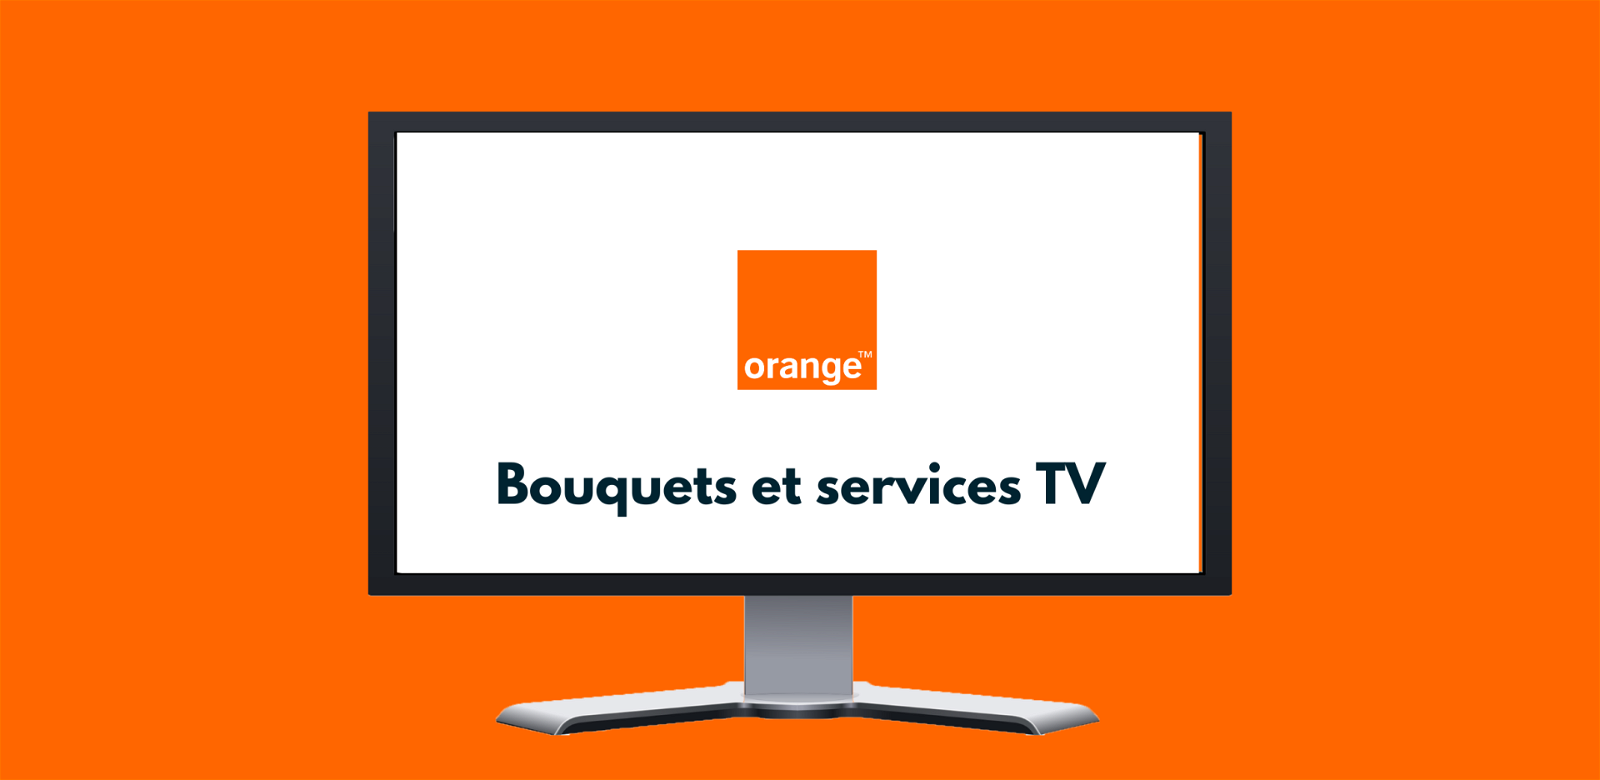 Orange TV : chaines, bouquets et service TV